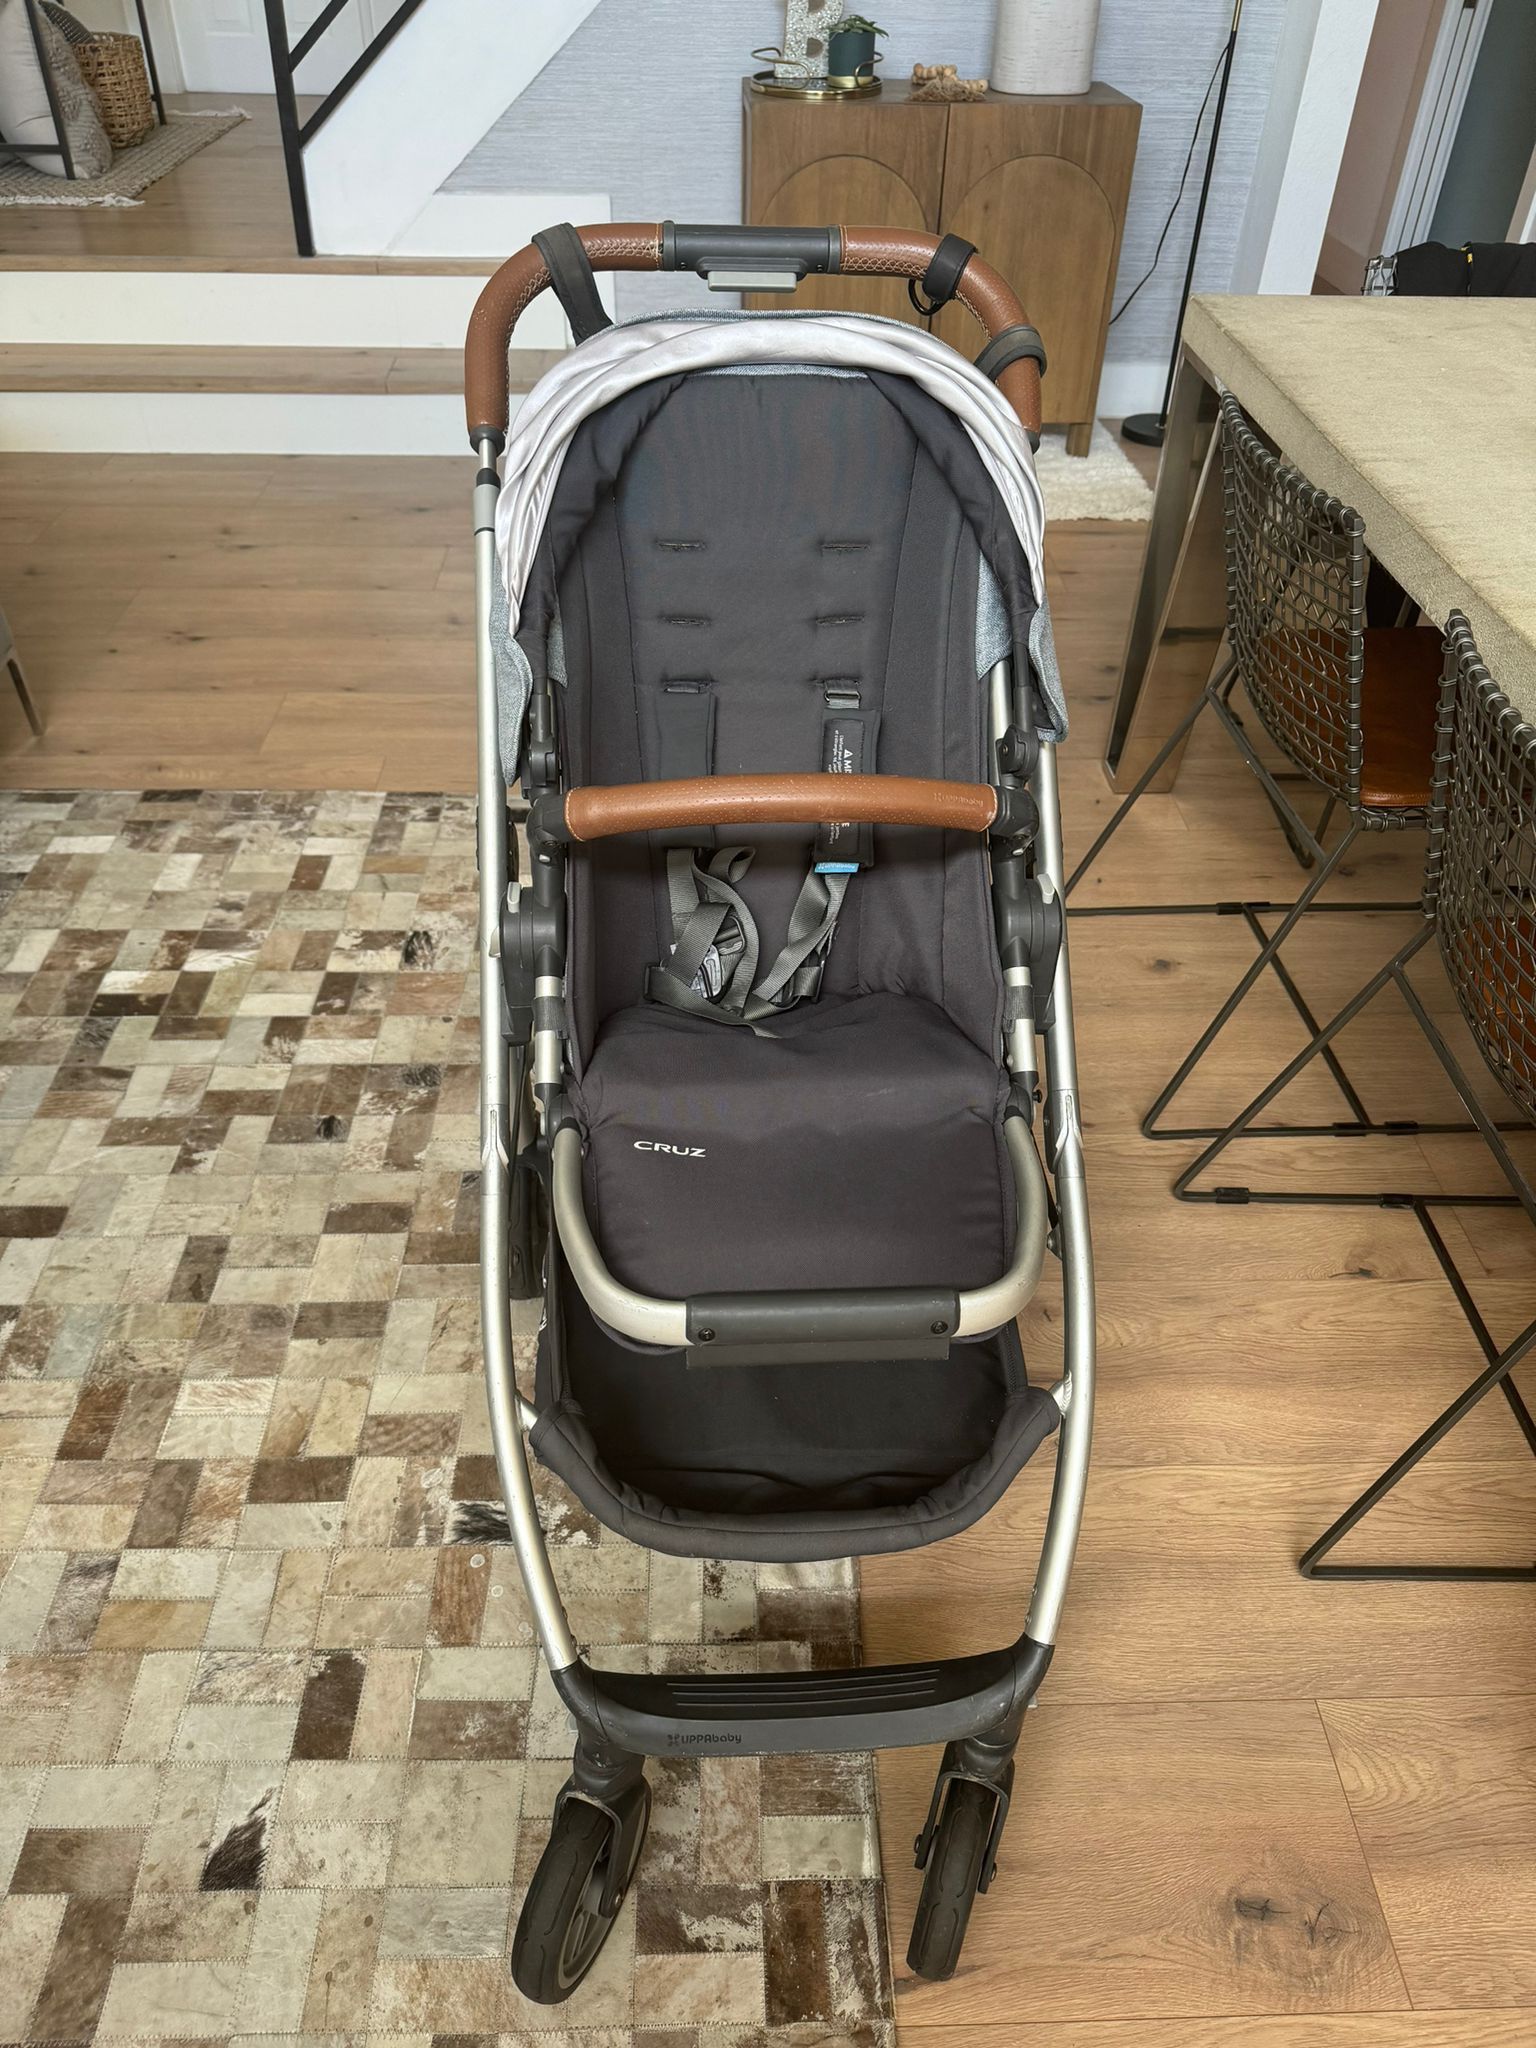 Uppa Baby Stroller